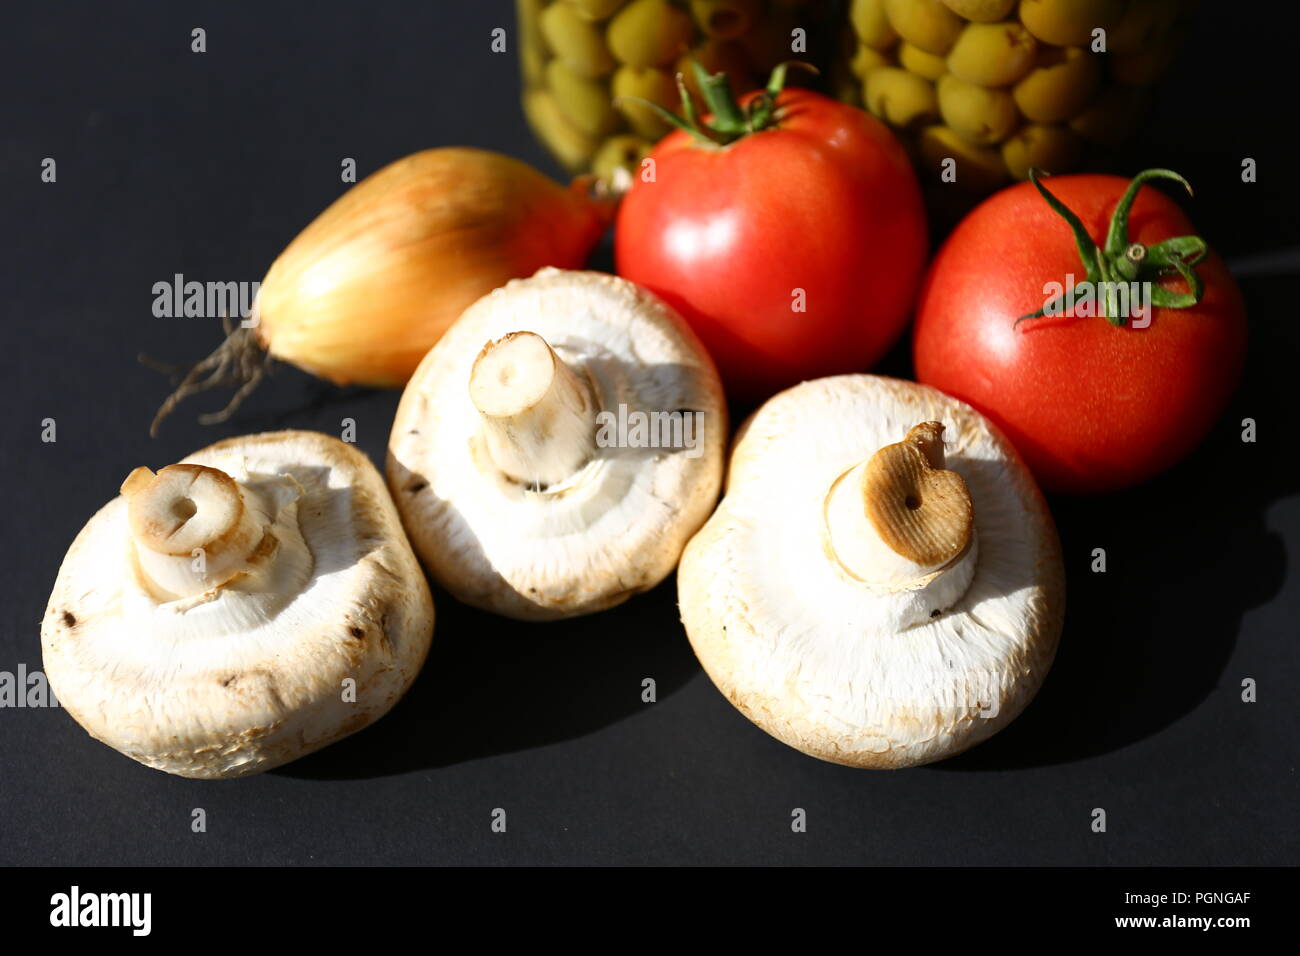 L'alimentation : Légumes - tomates, oignons, olives, champignons Banque D'Images